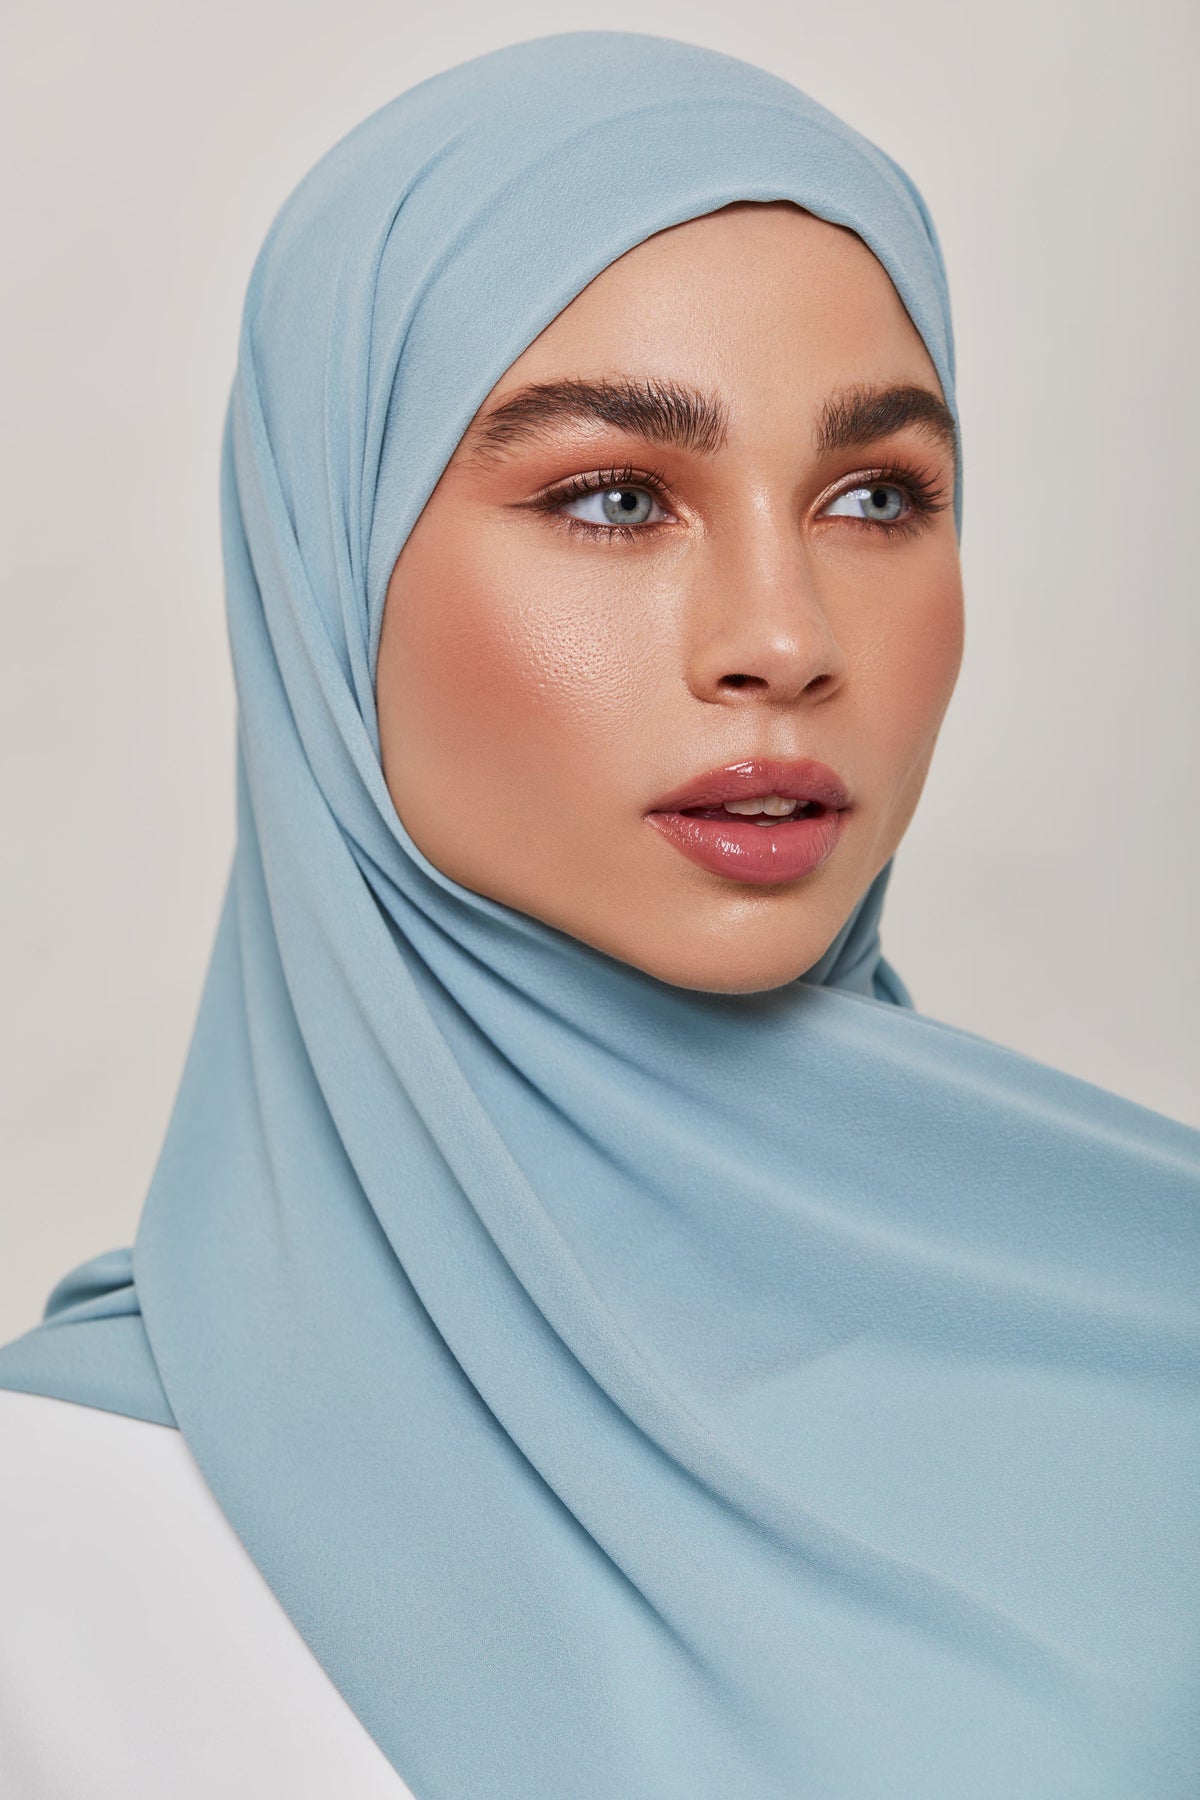 TEXTURE Everyday Chiffon Hijab - Sea Ya epschoolboard 